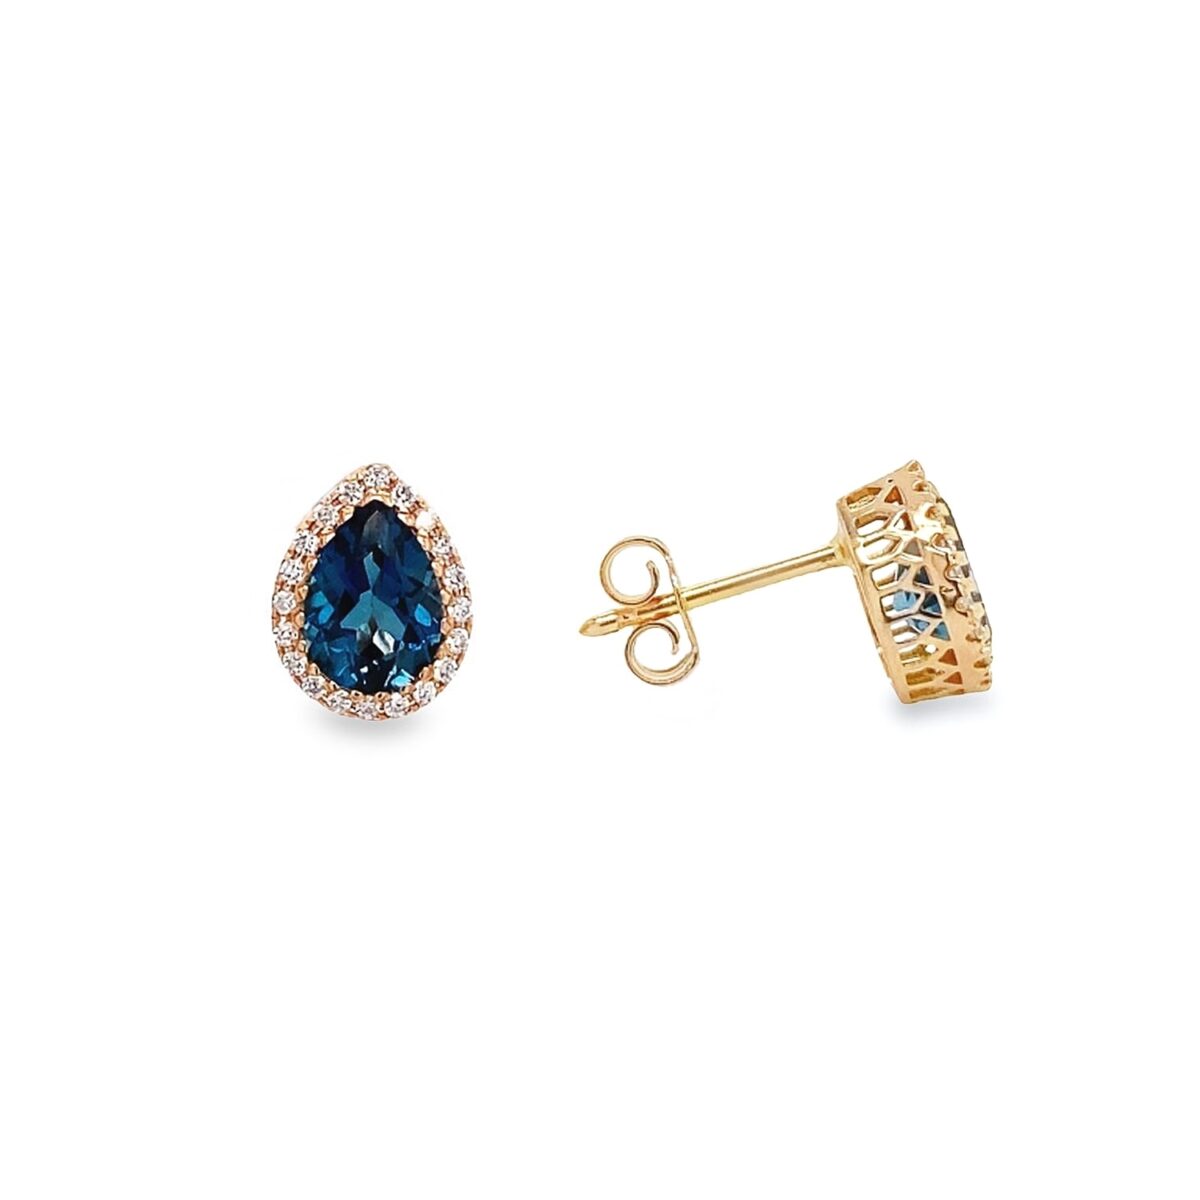 Jewellers - Σκουλαρίκια με Μπλε Τοπάζι και Διαμάντια